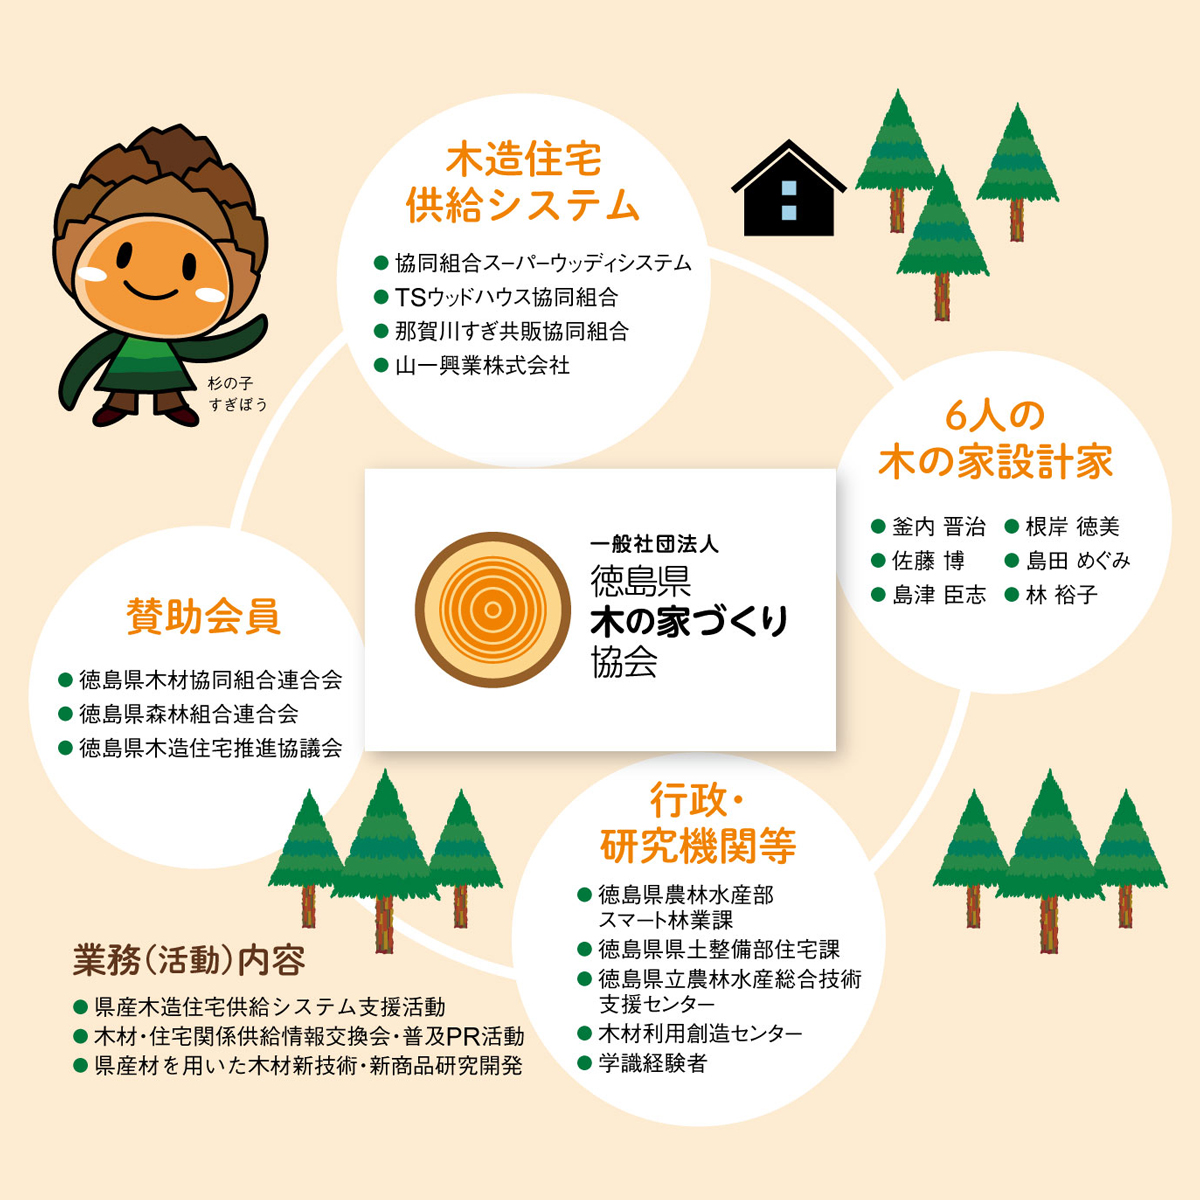 一般社団法人徳島県木の家づくり協会について